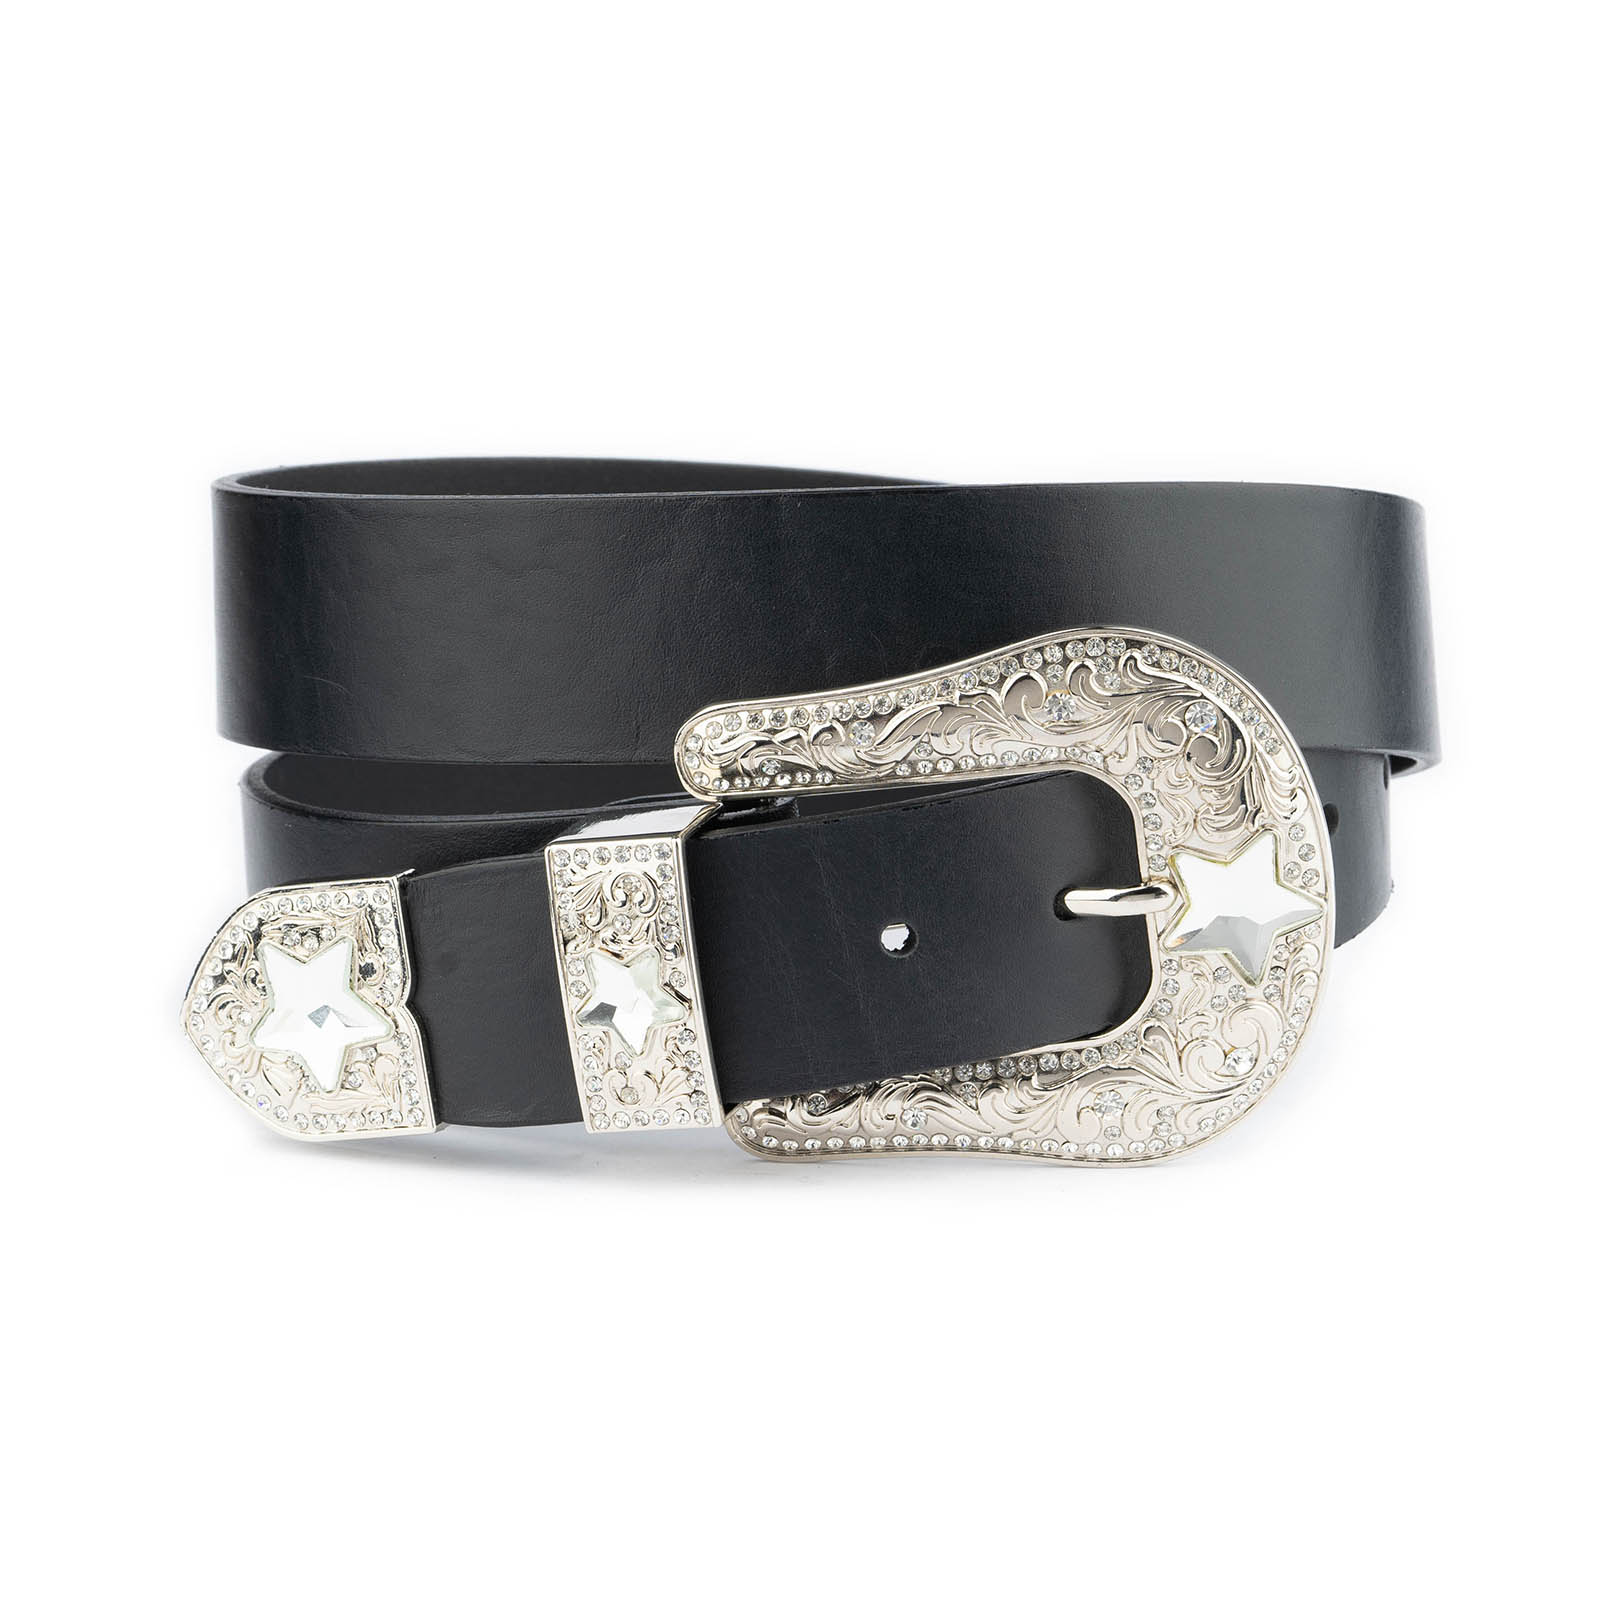 Western Style Diamond shape buckle belt in Black